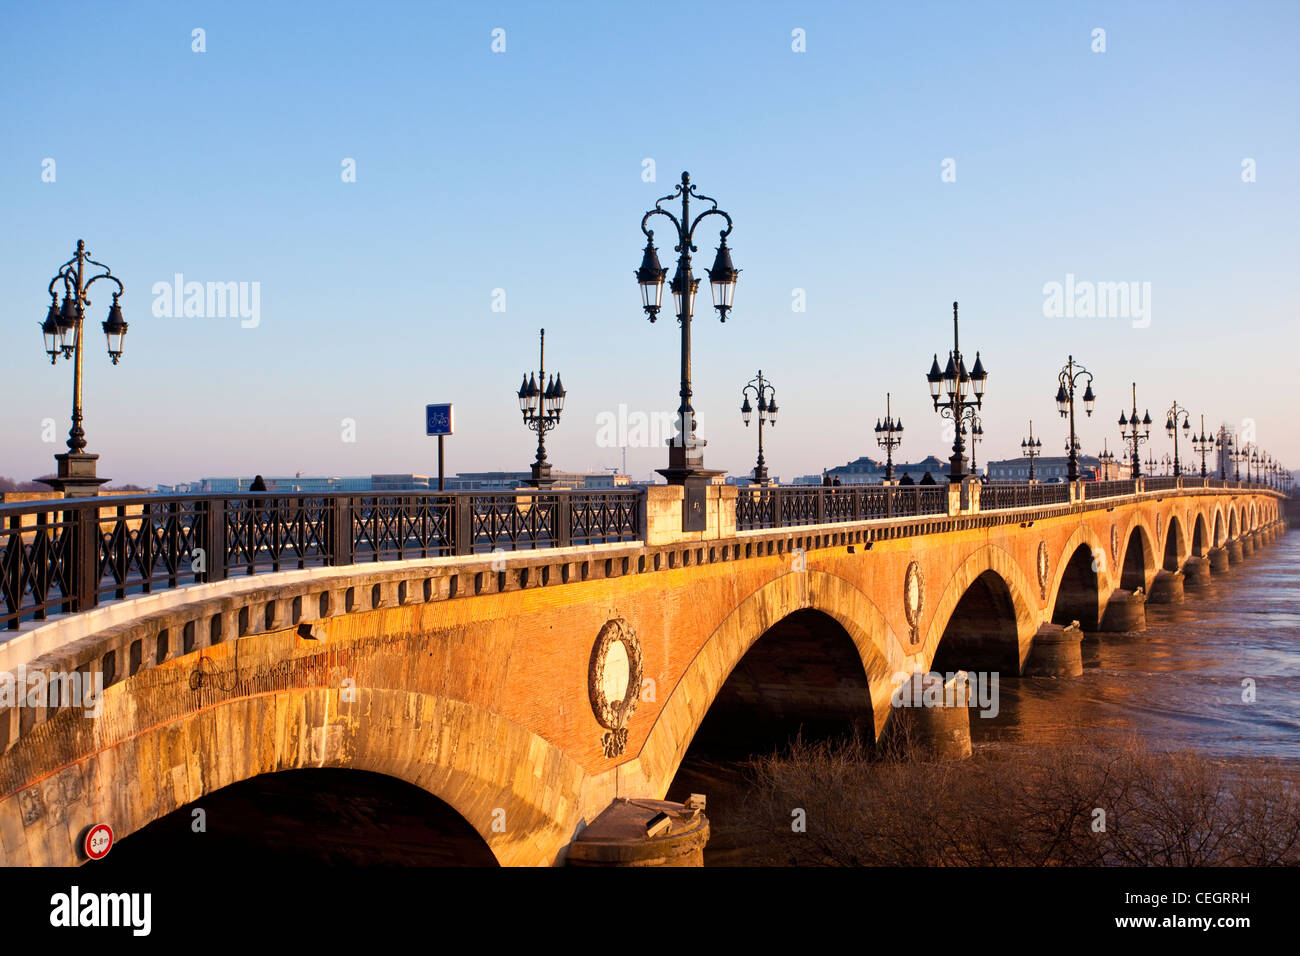 Pont de Pierre bridge crossing La Garonne River, Bordeaux, France. Stock Photo